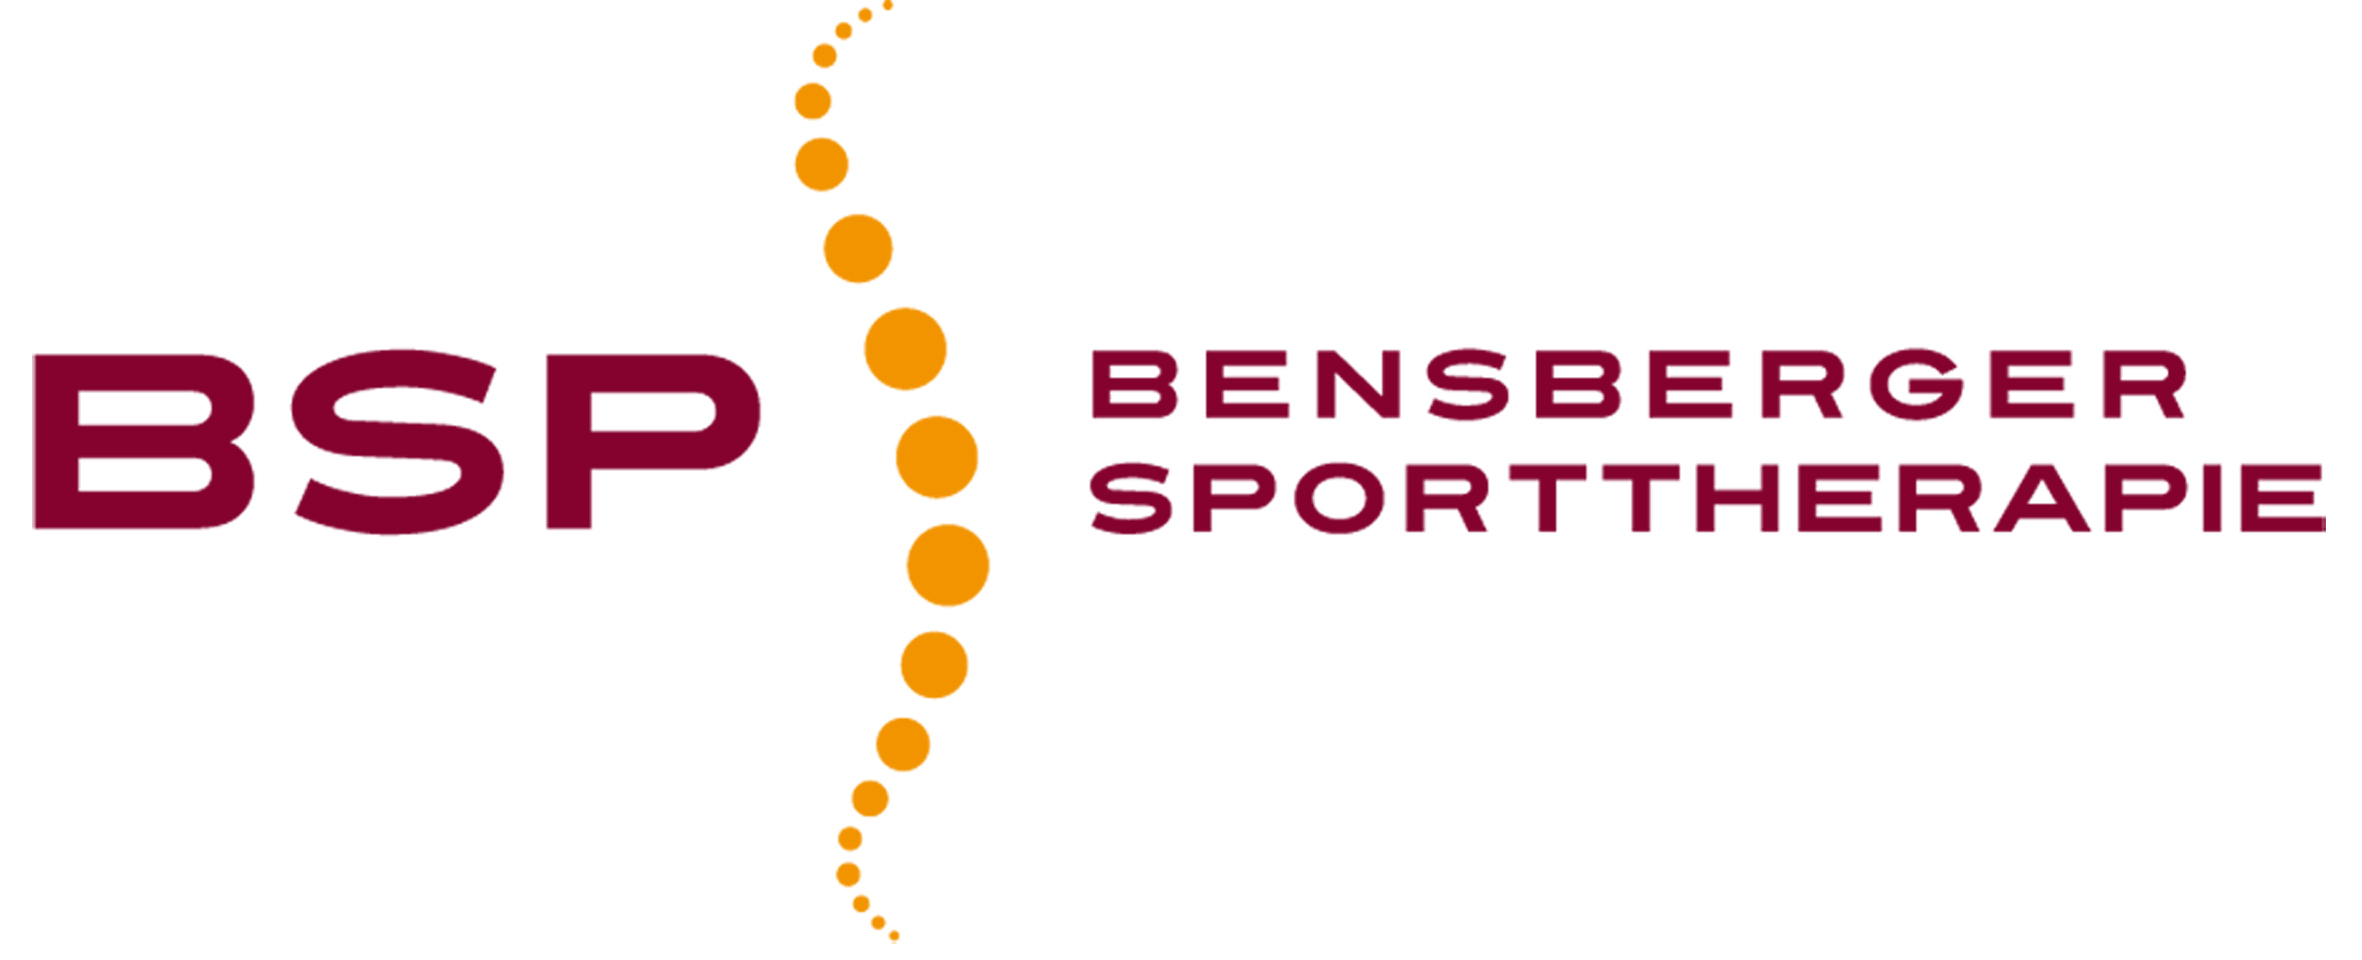 BSP – Bensberger Sporttherapie e. V.